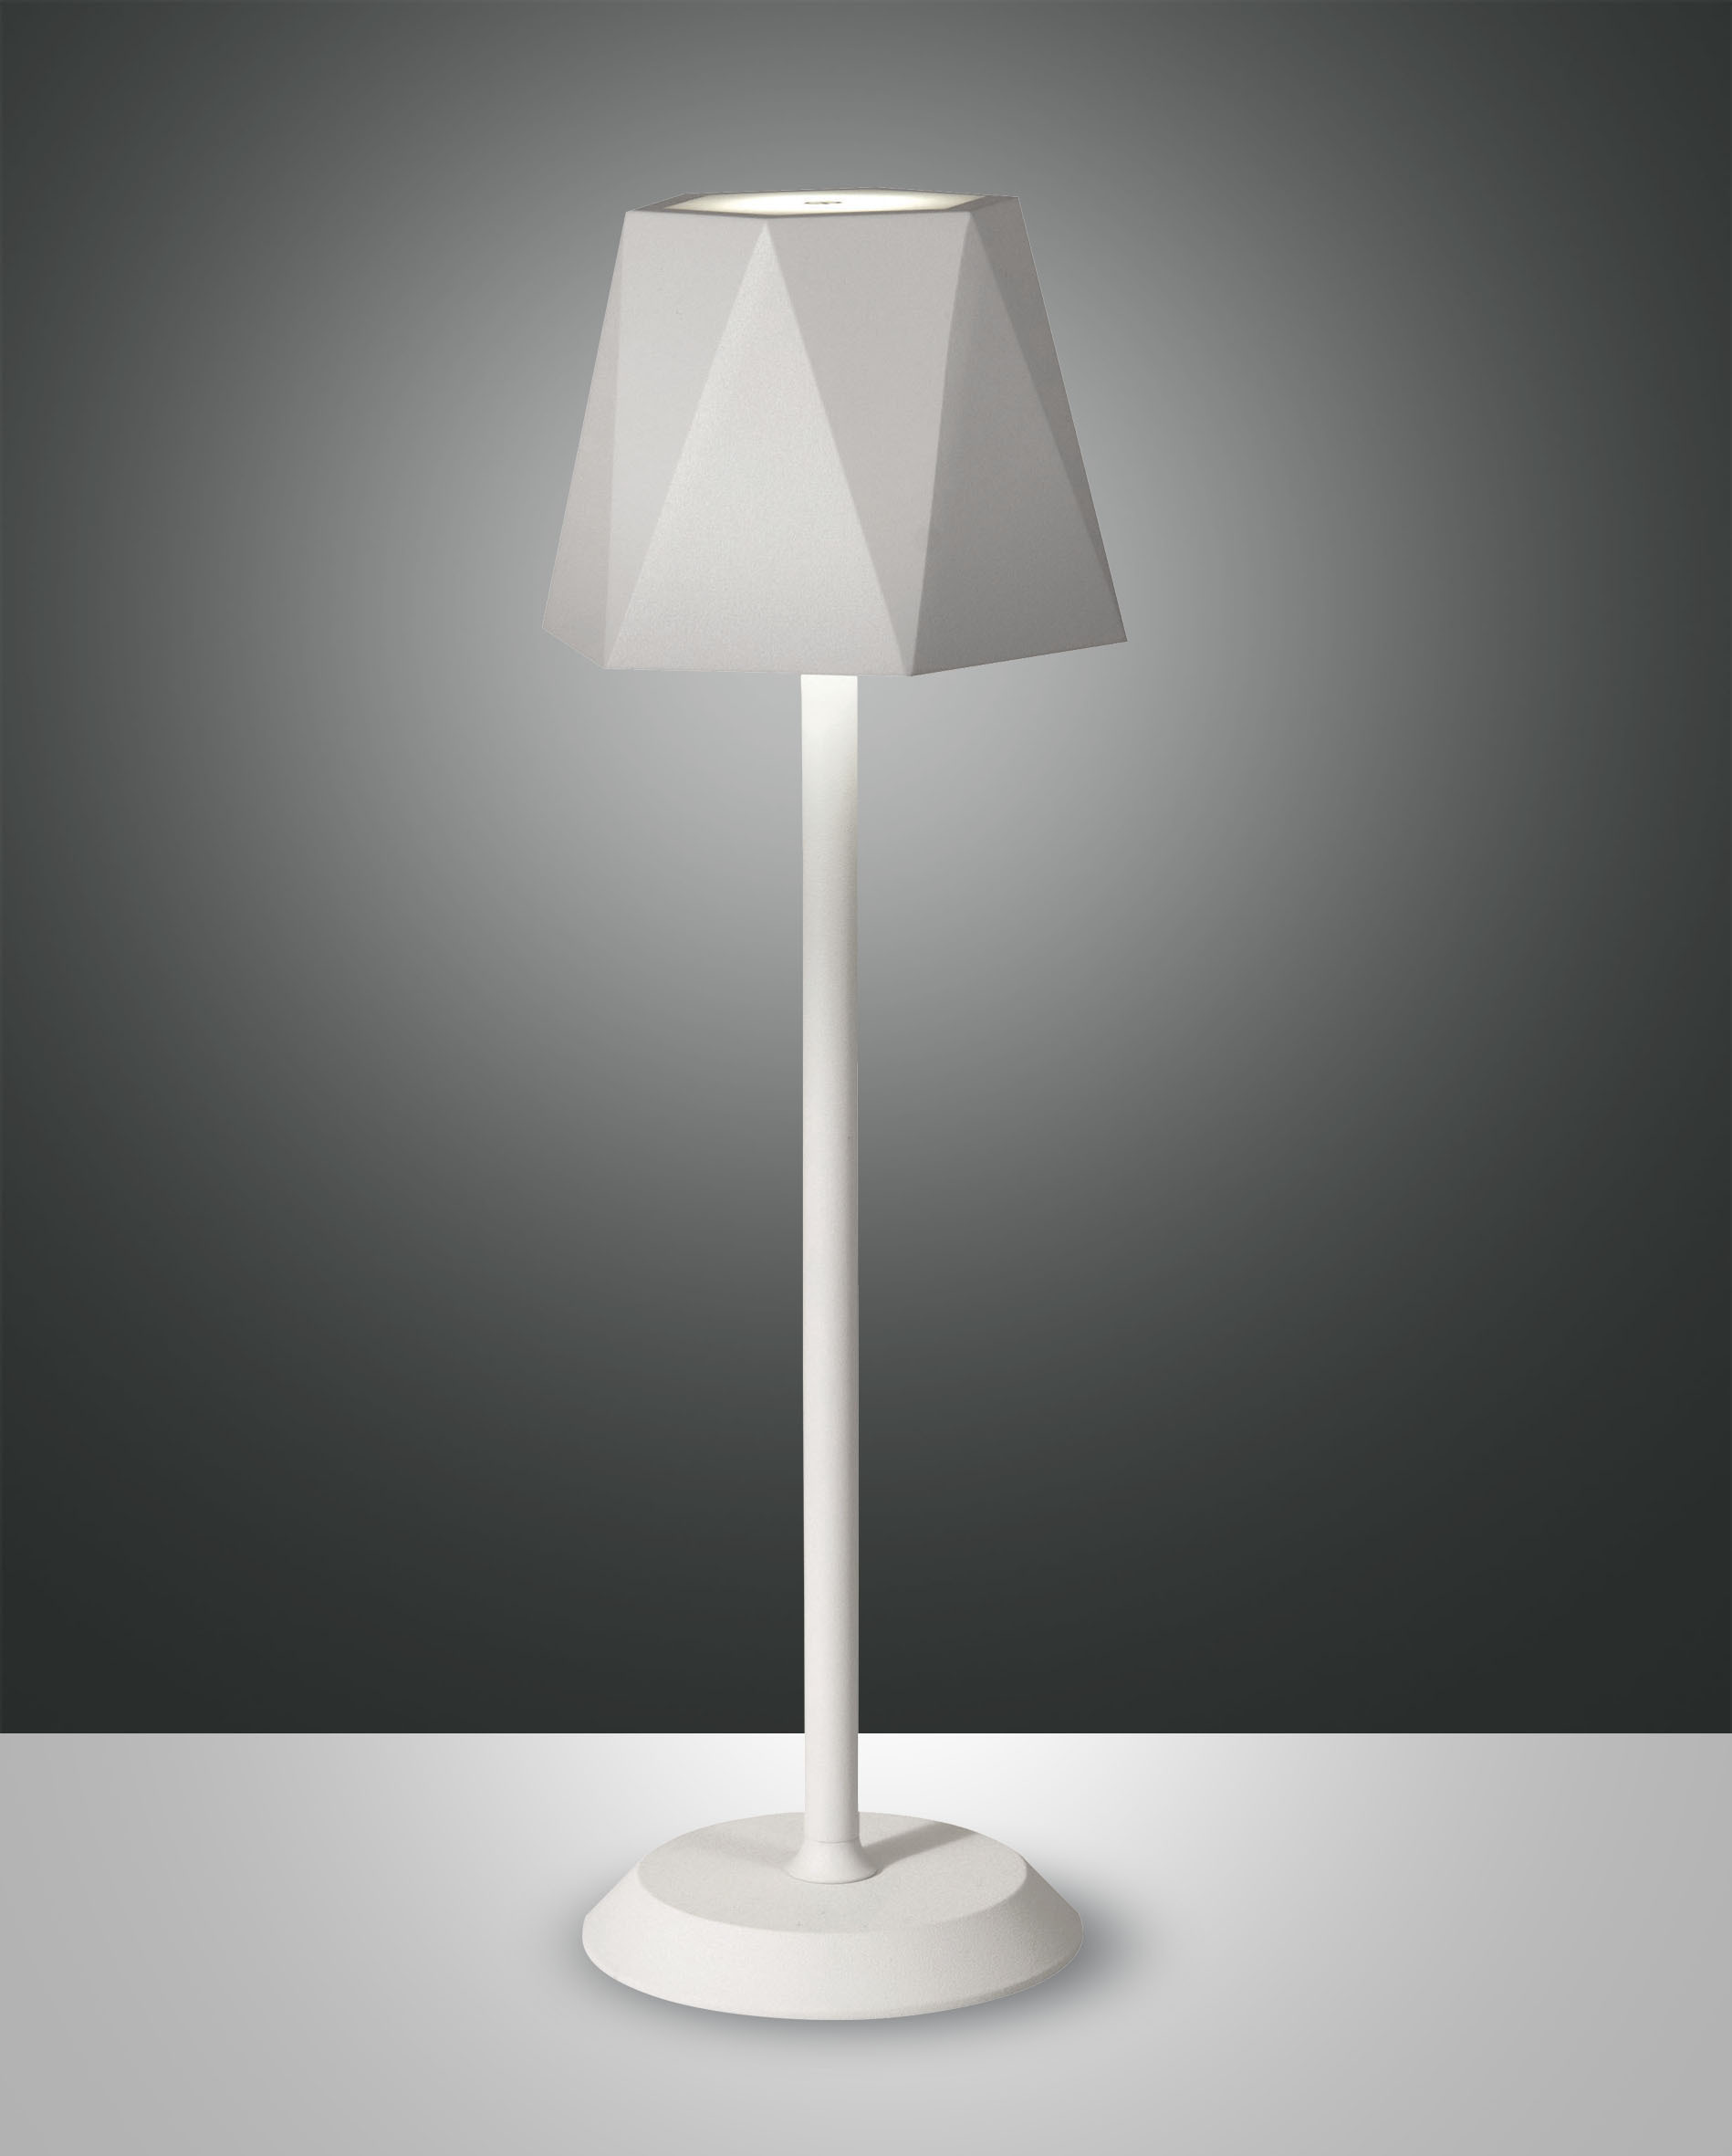 Italská LED lampička Katy La mia Luce 3678-30-102 stmívatelná IP54